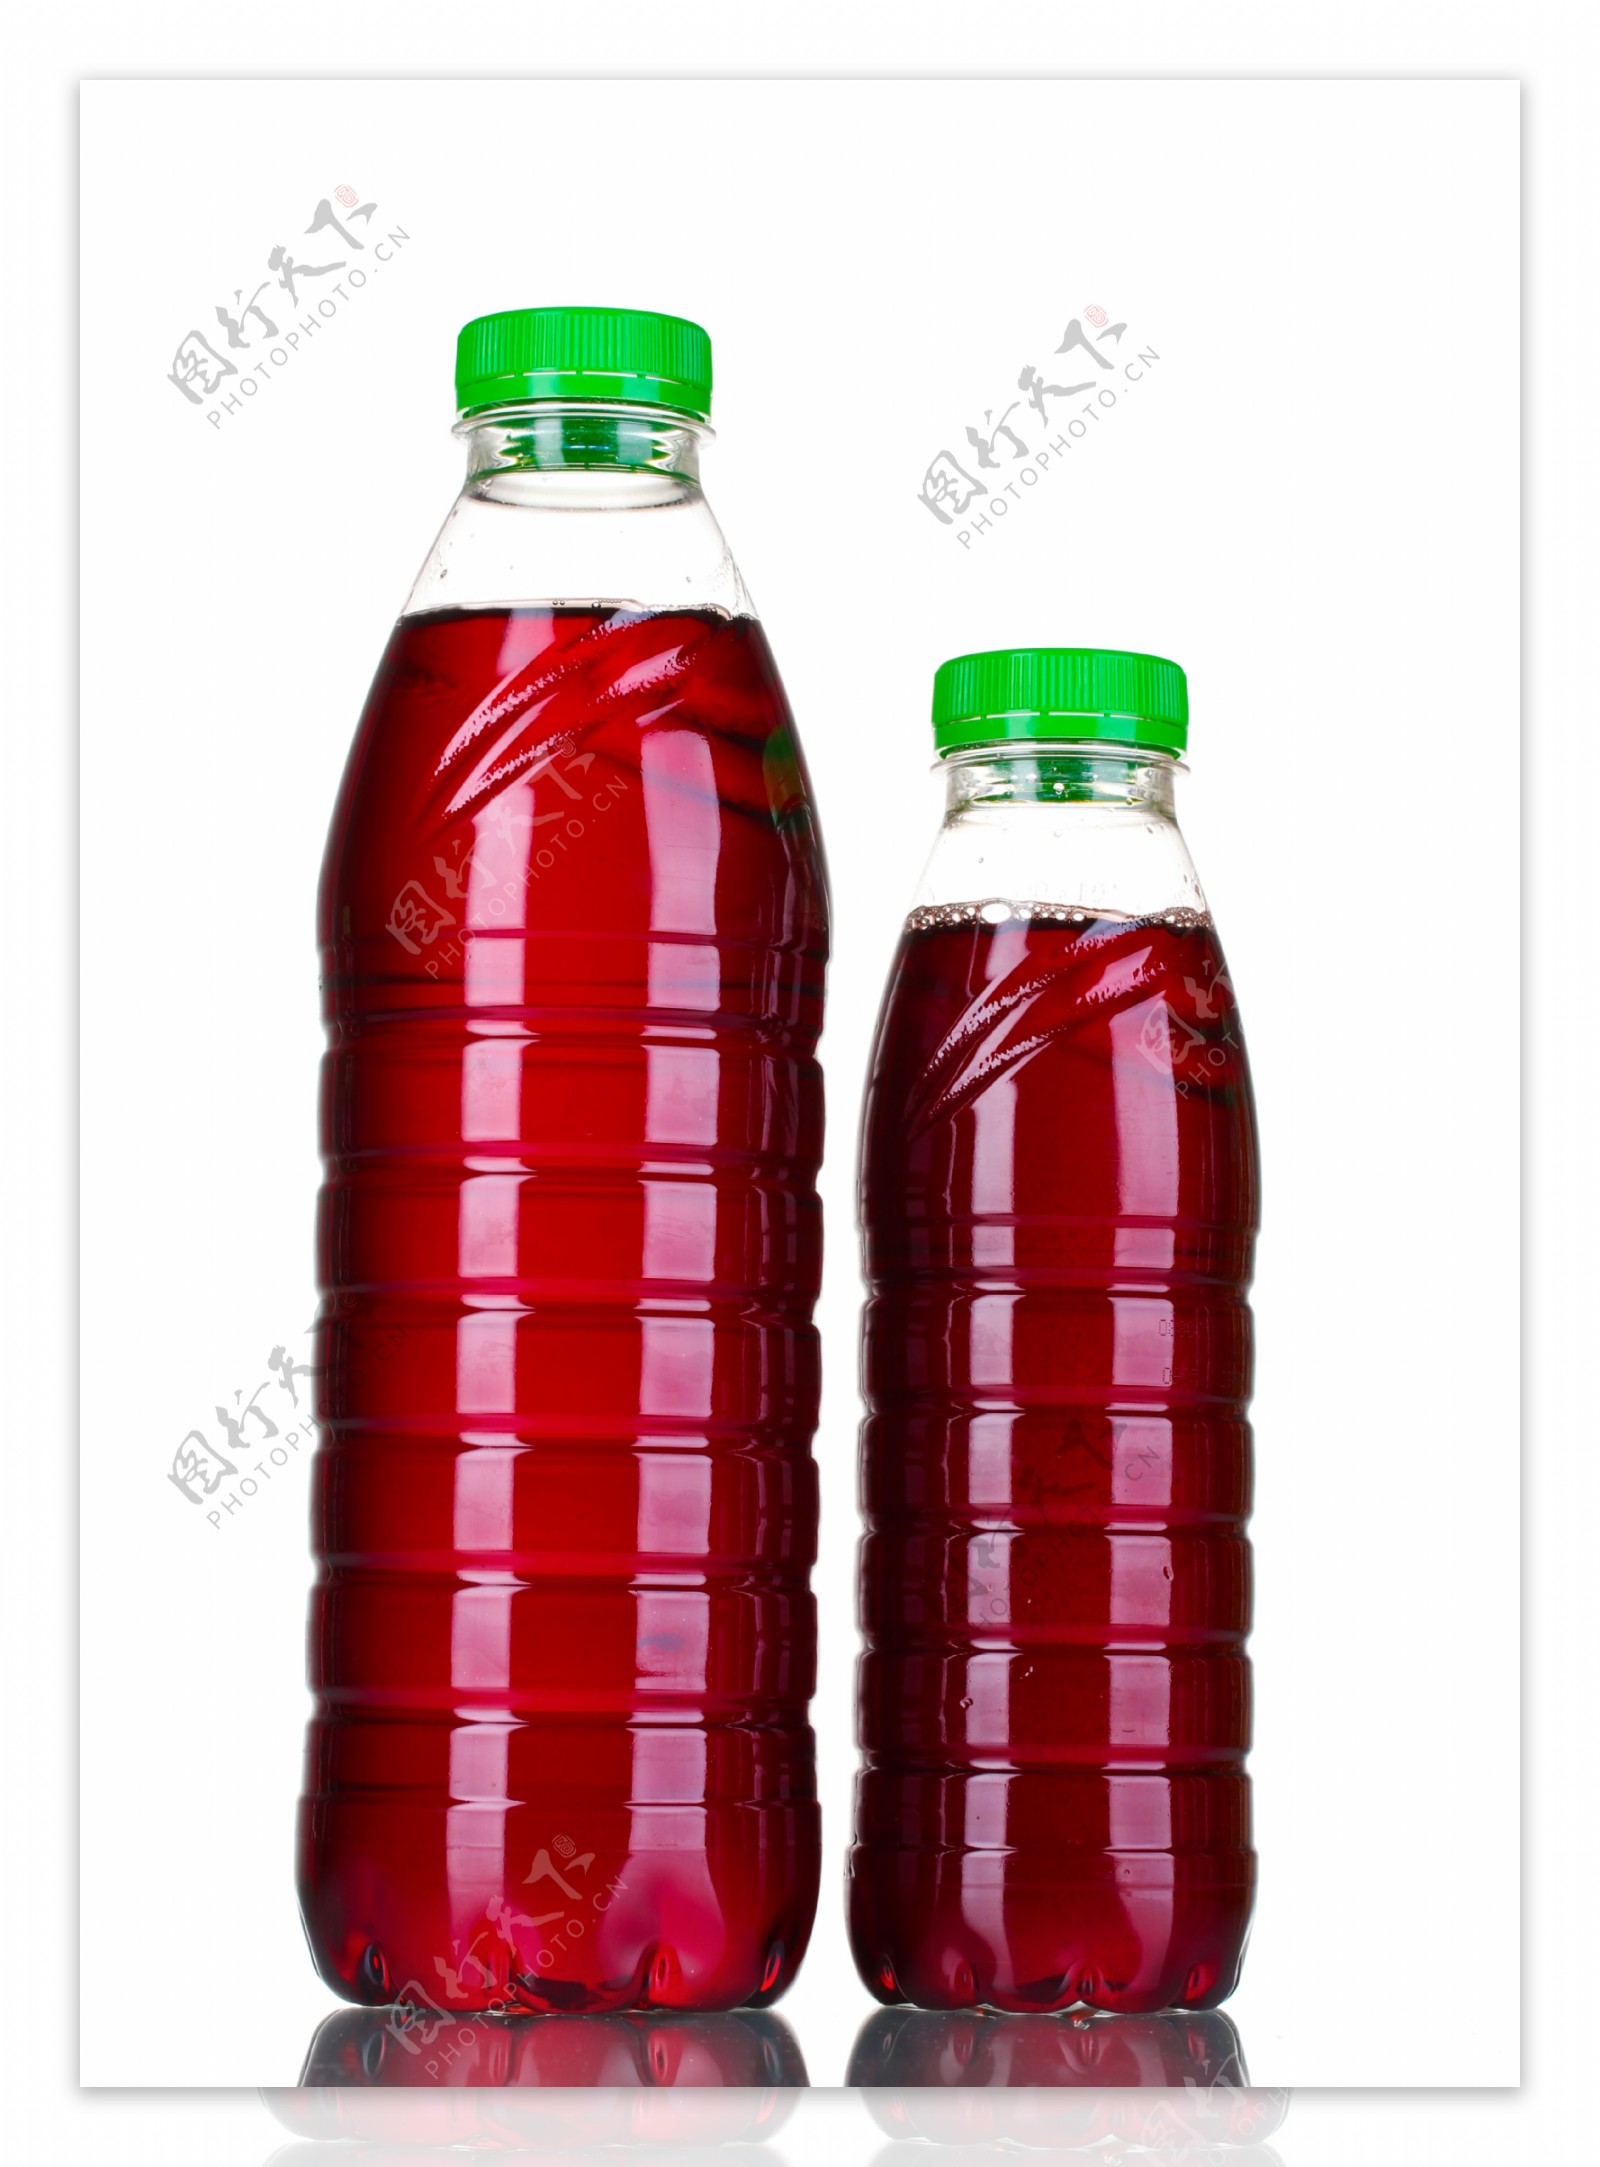 两瓶果汁图片